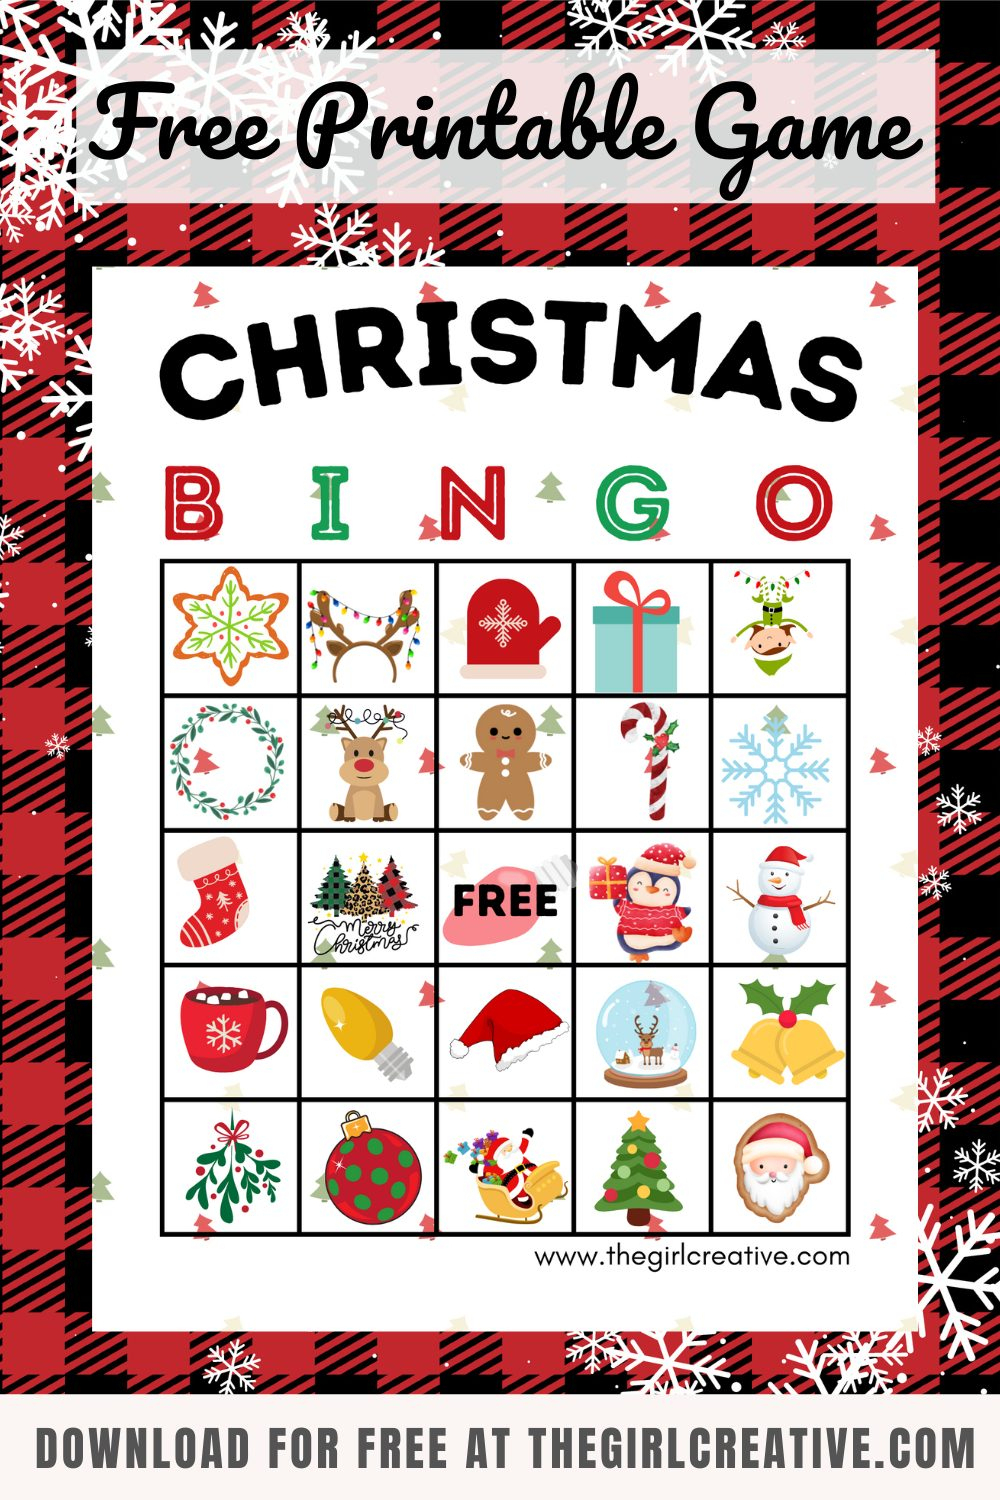 Free Printable Christmas Bingo Cards - The Girl Creative - Free Printable Holiday Bingo Games